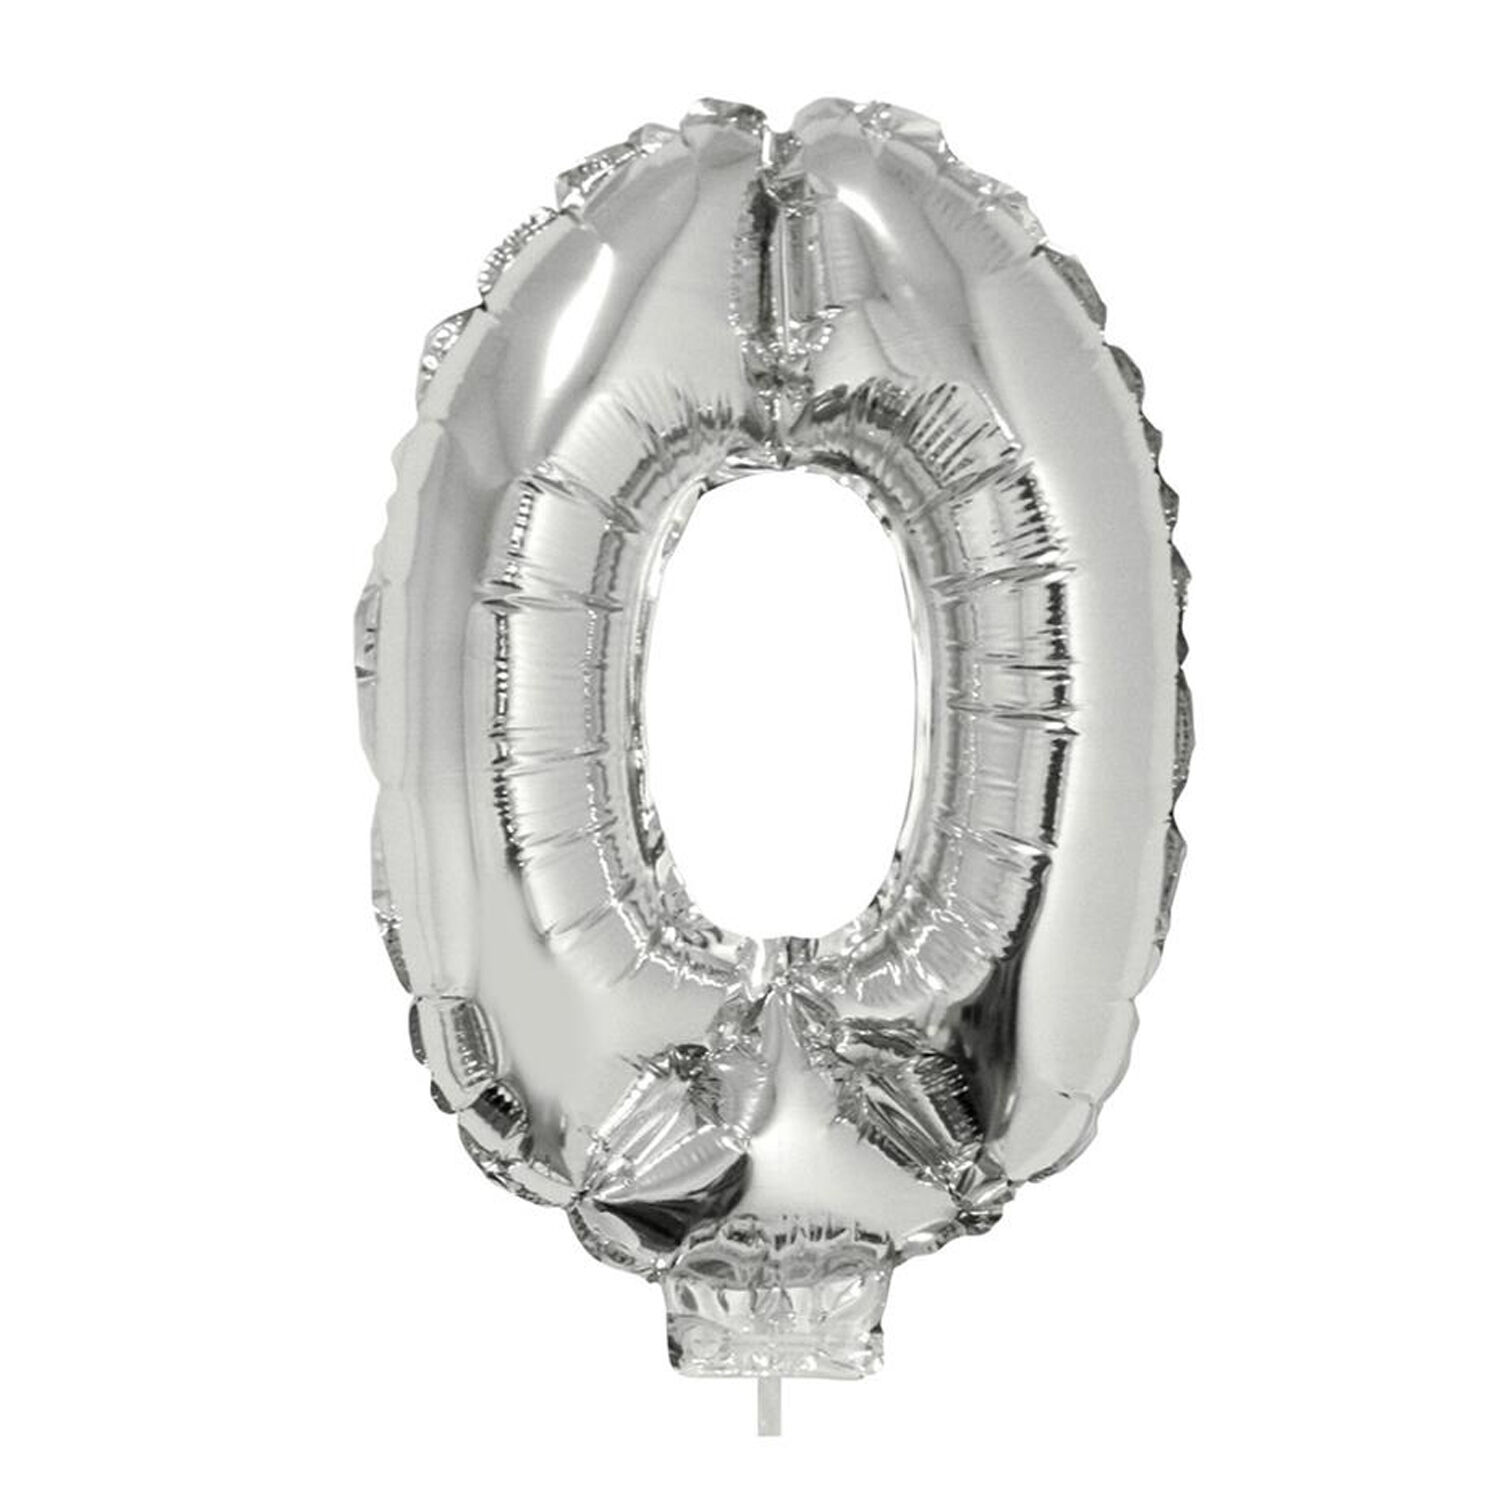 NEU Mini-Folienballon am Papierstbchen, Zahl 0, silber, ca. 40cm